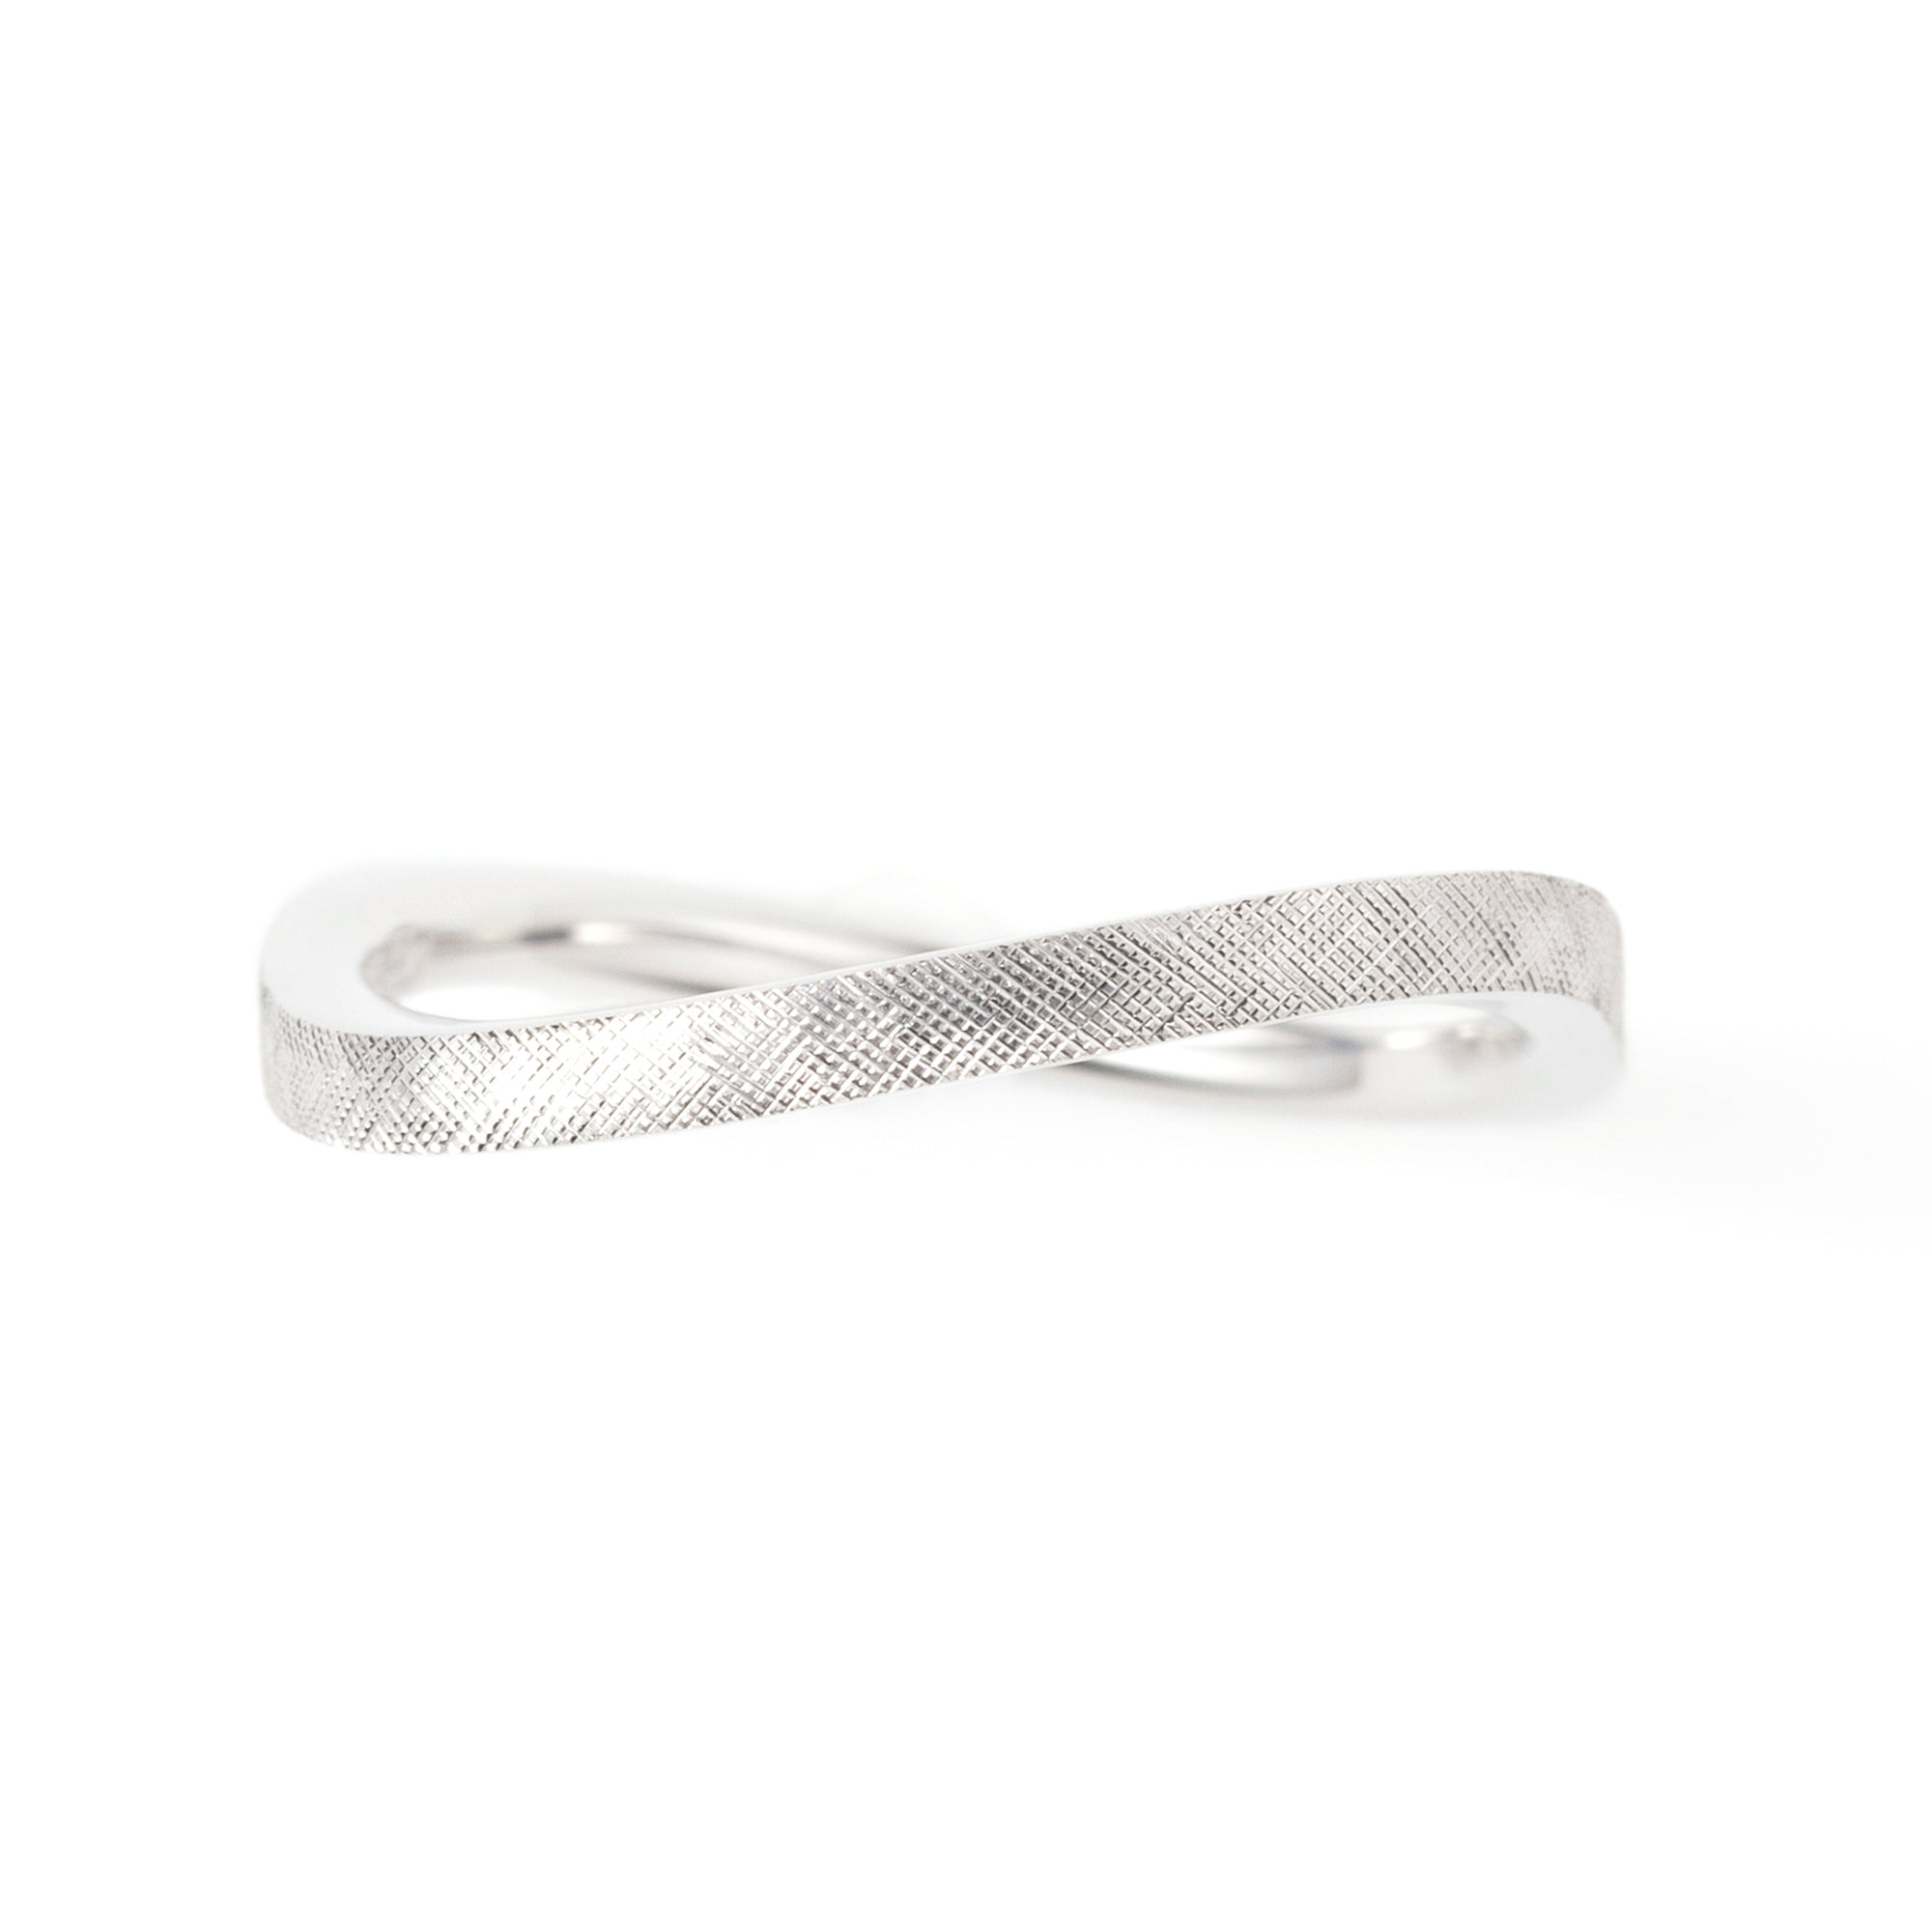 Silver925 リング Hineru(ひねる)。上下で10°ずつひねられたモダンデザインで、マリッジリング・結婚指輪、普段使いにも。